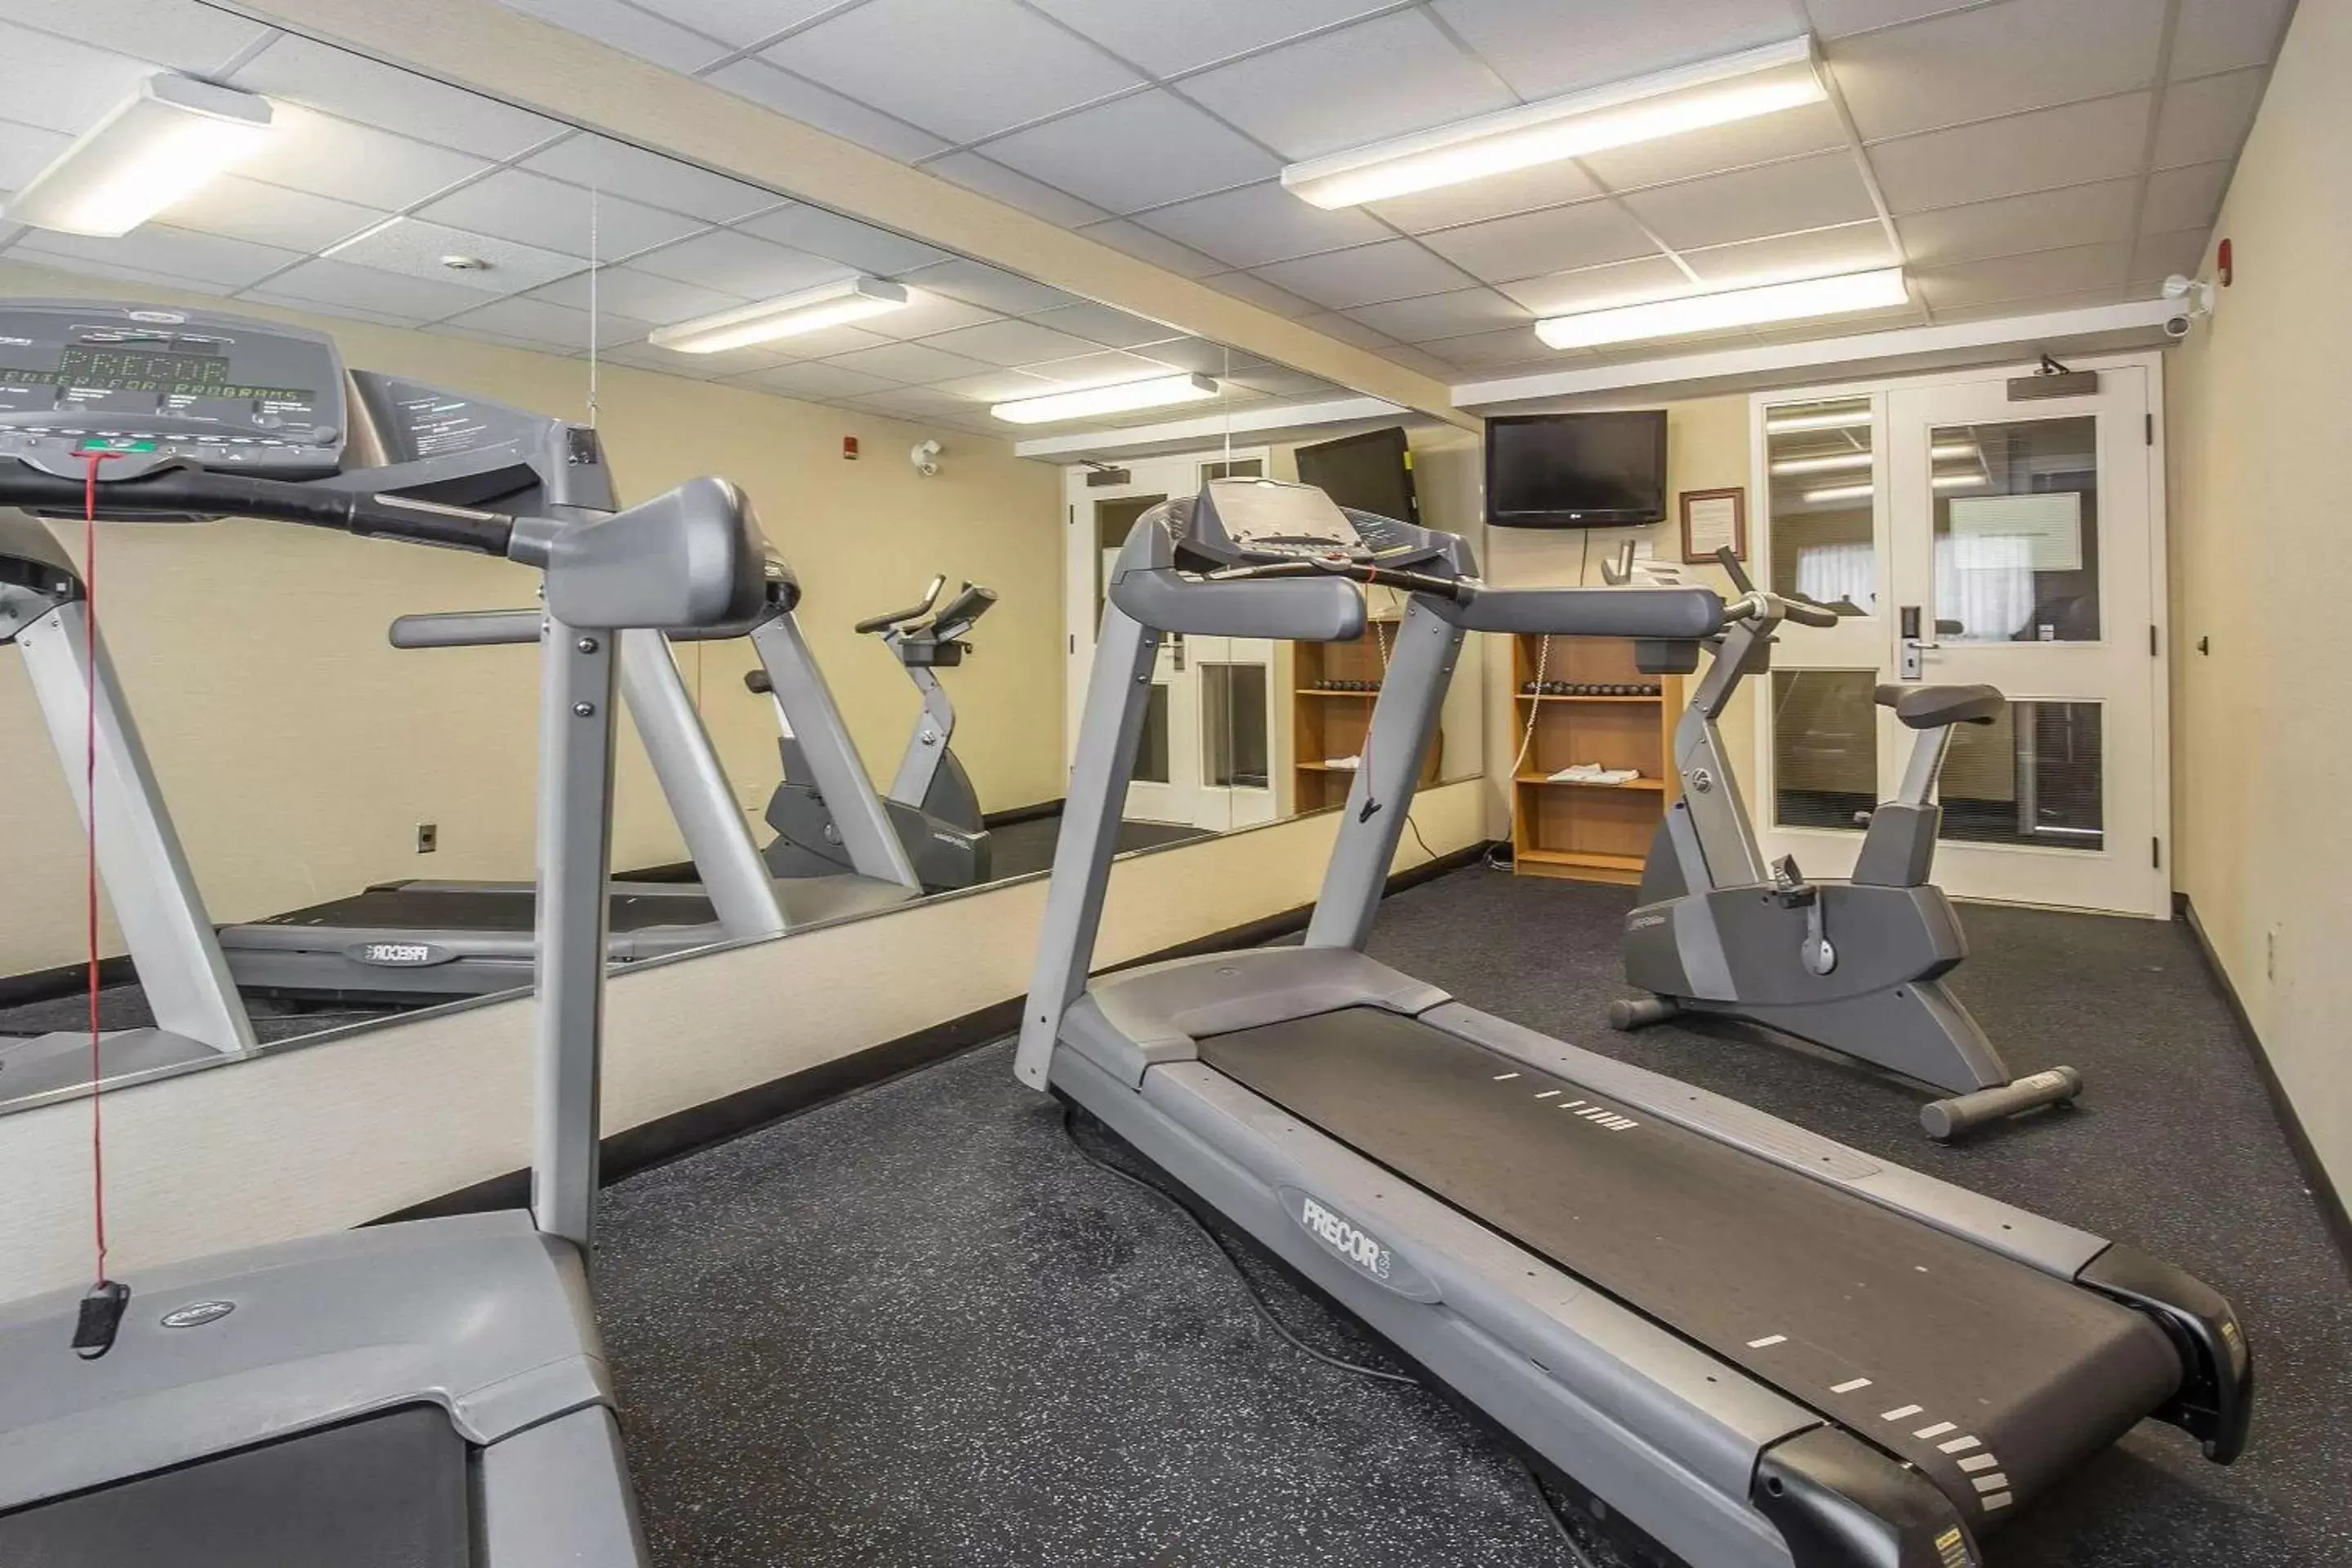 Fitness centre/facilities, Fitness Center/Facilities in Comfort Inn Pickering